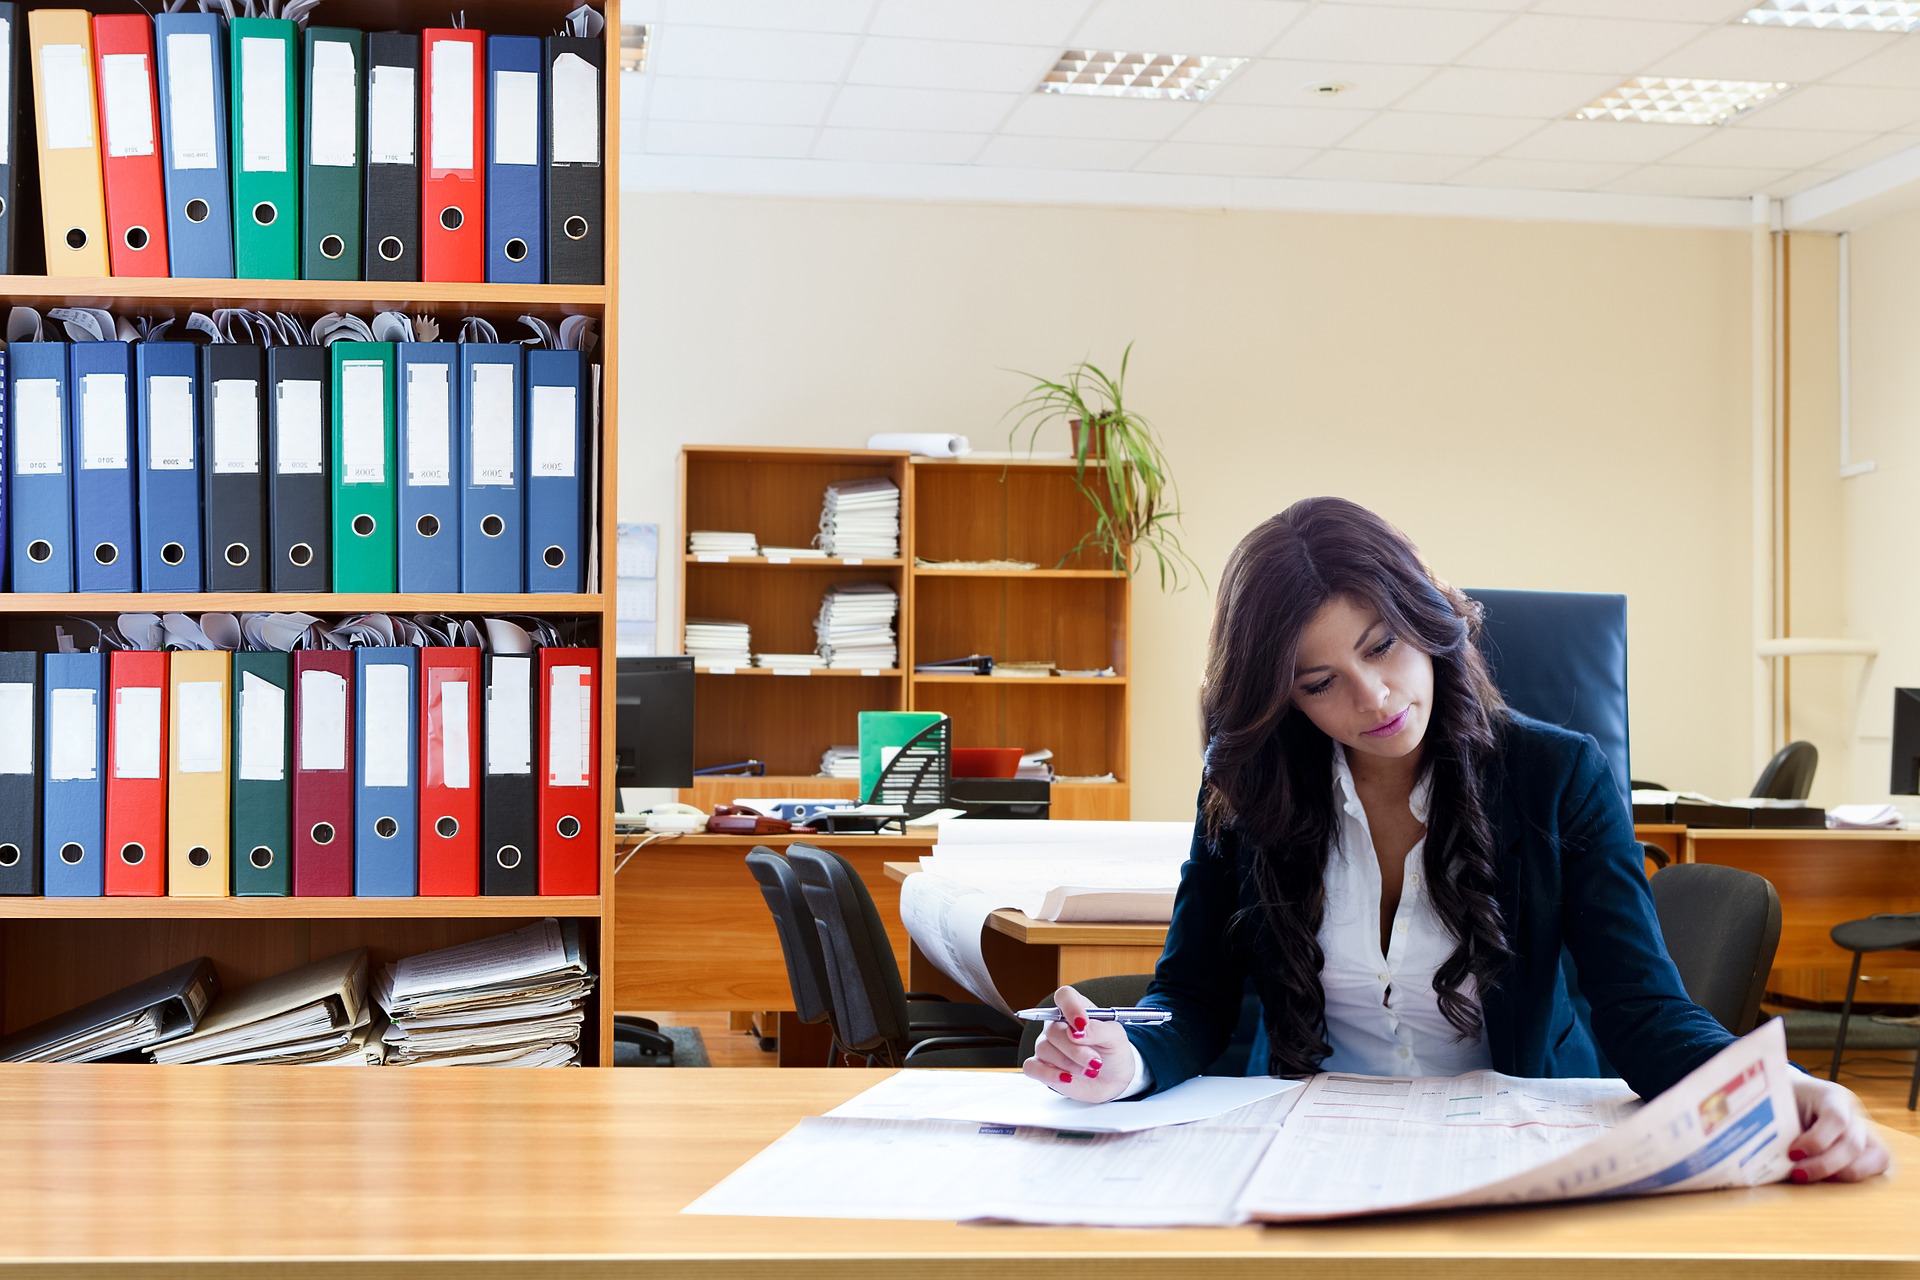 Zdjęcie przedstawia kobietę znajdującą się w pomieszczeniu biurowym; na drugim planie znajduje się przestrzeń biurowa w postaci regałów, biurek.